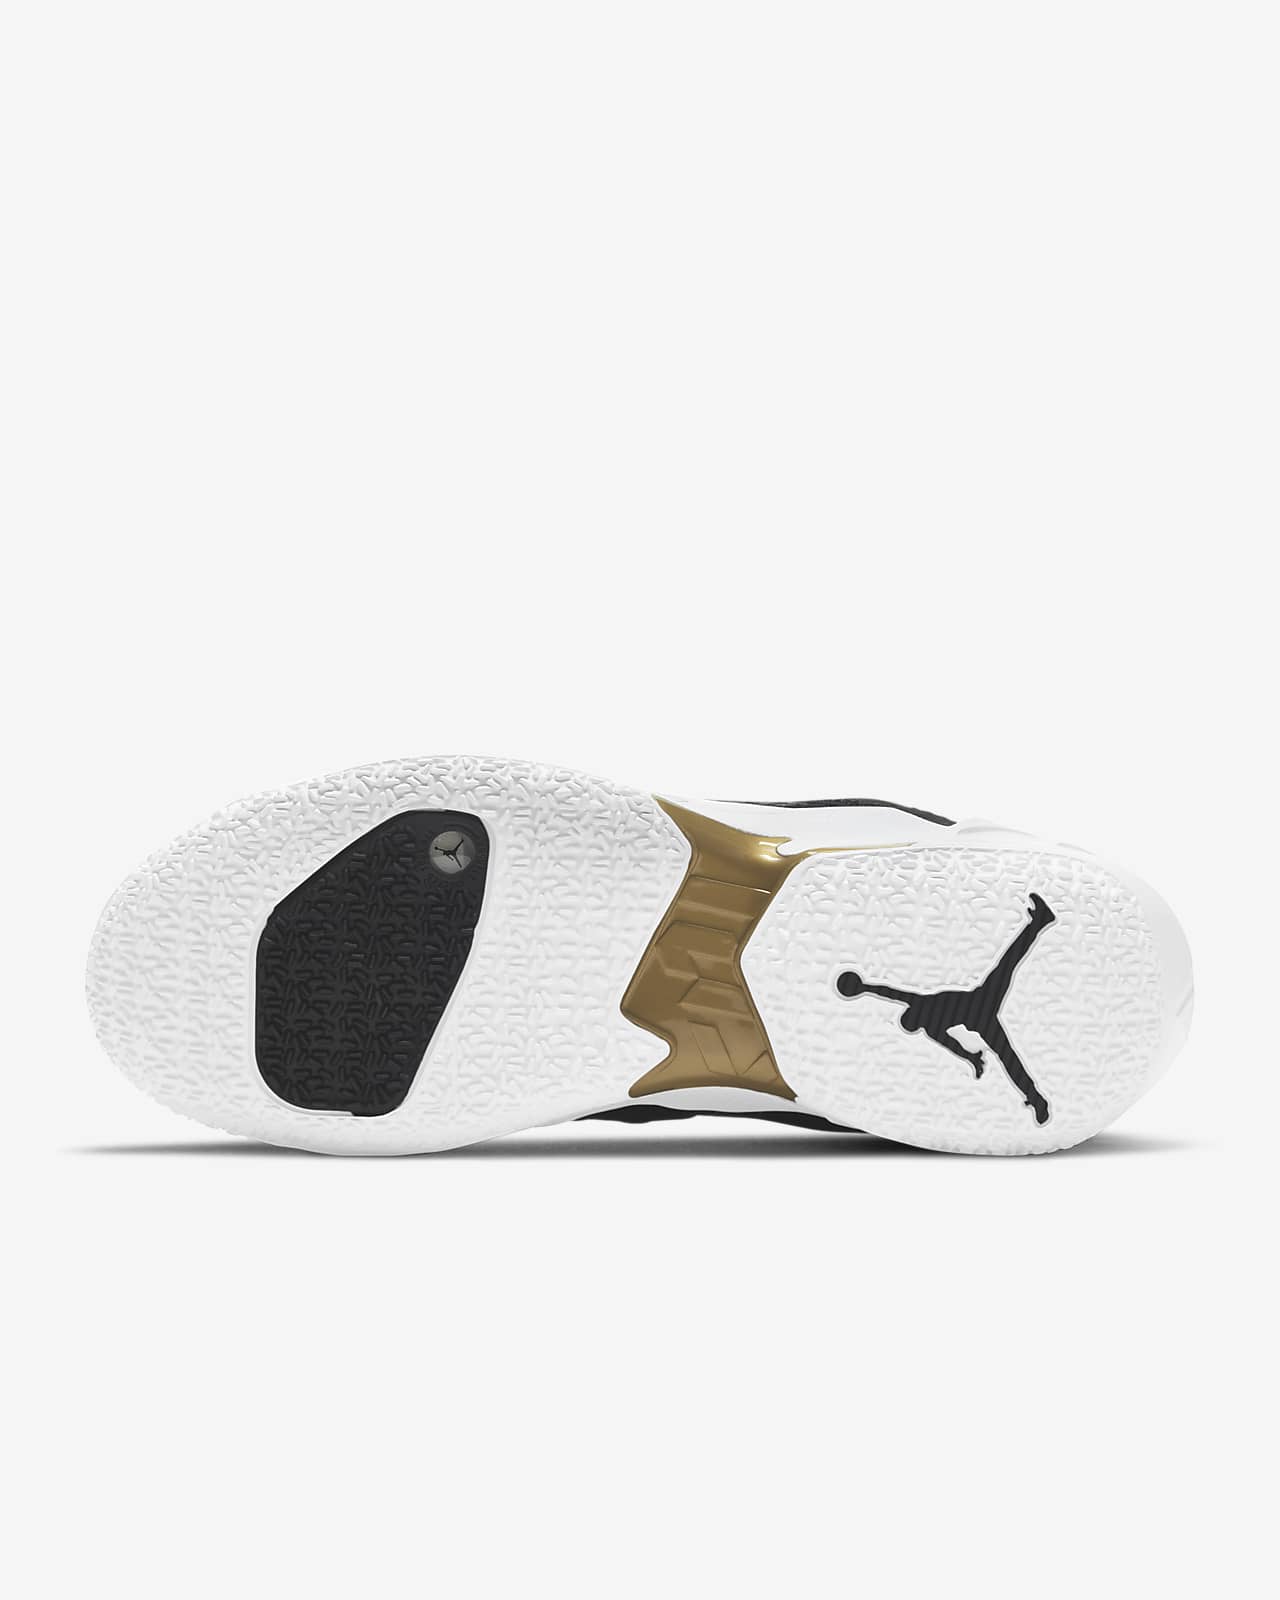 Zer0.4 'Family' Basketball Shoe. Nike LU